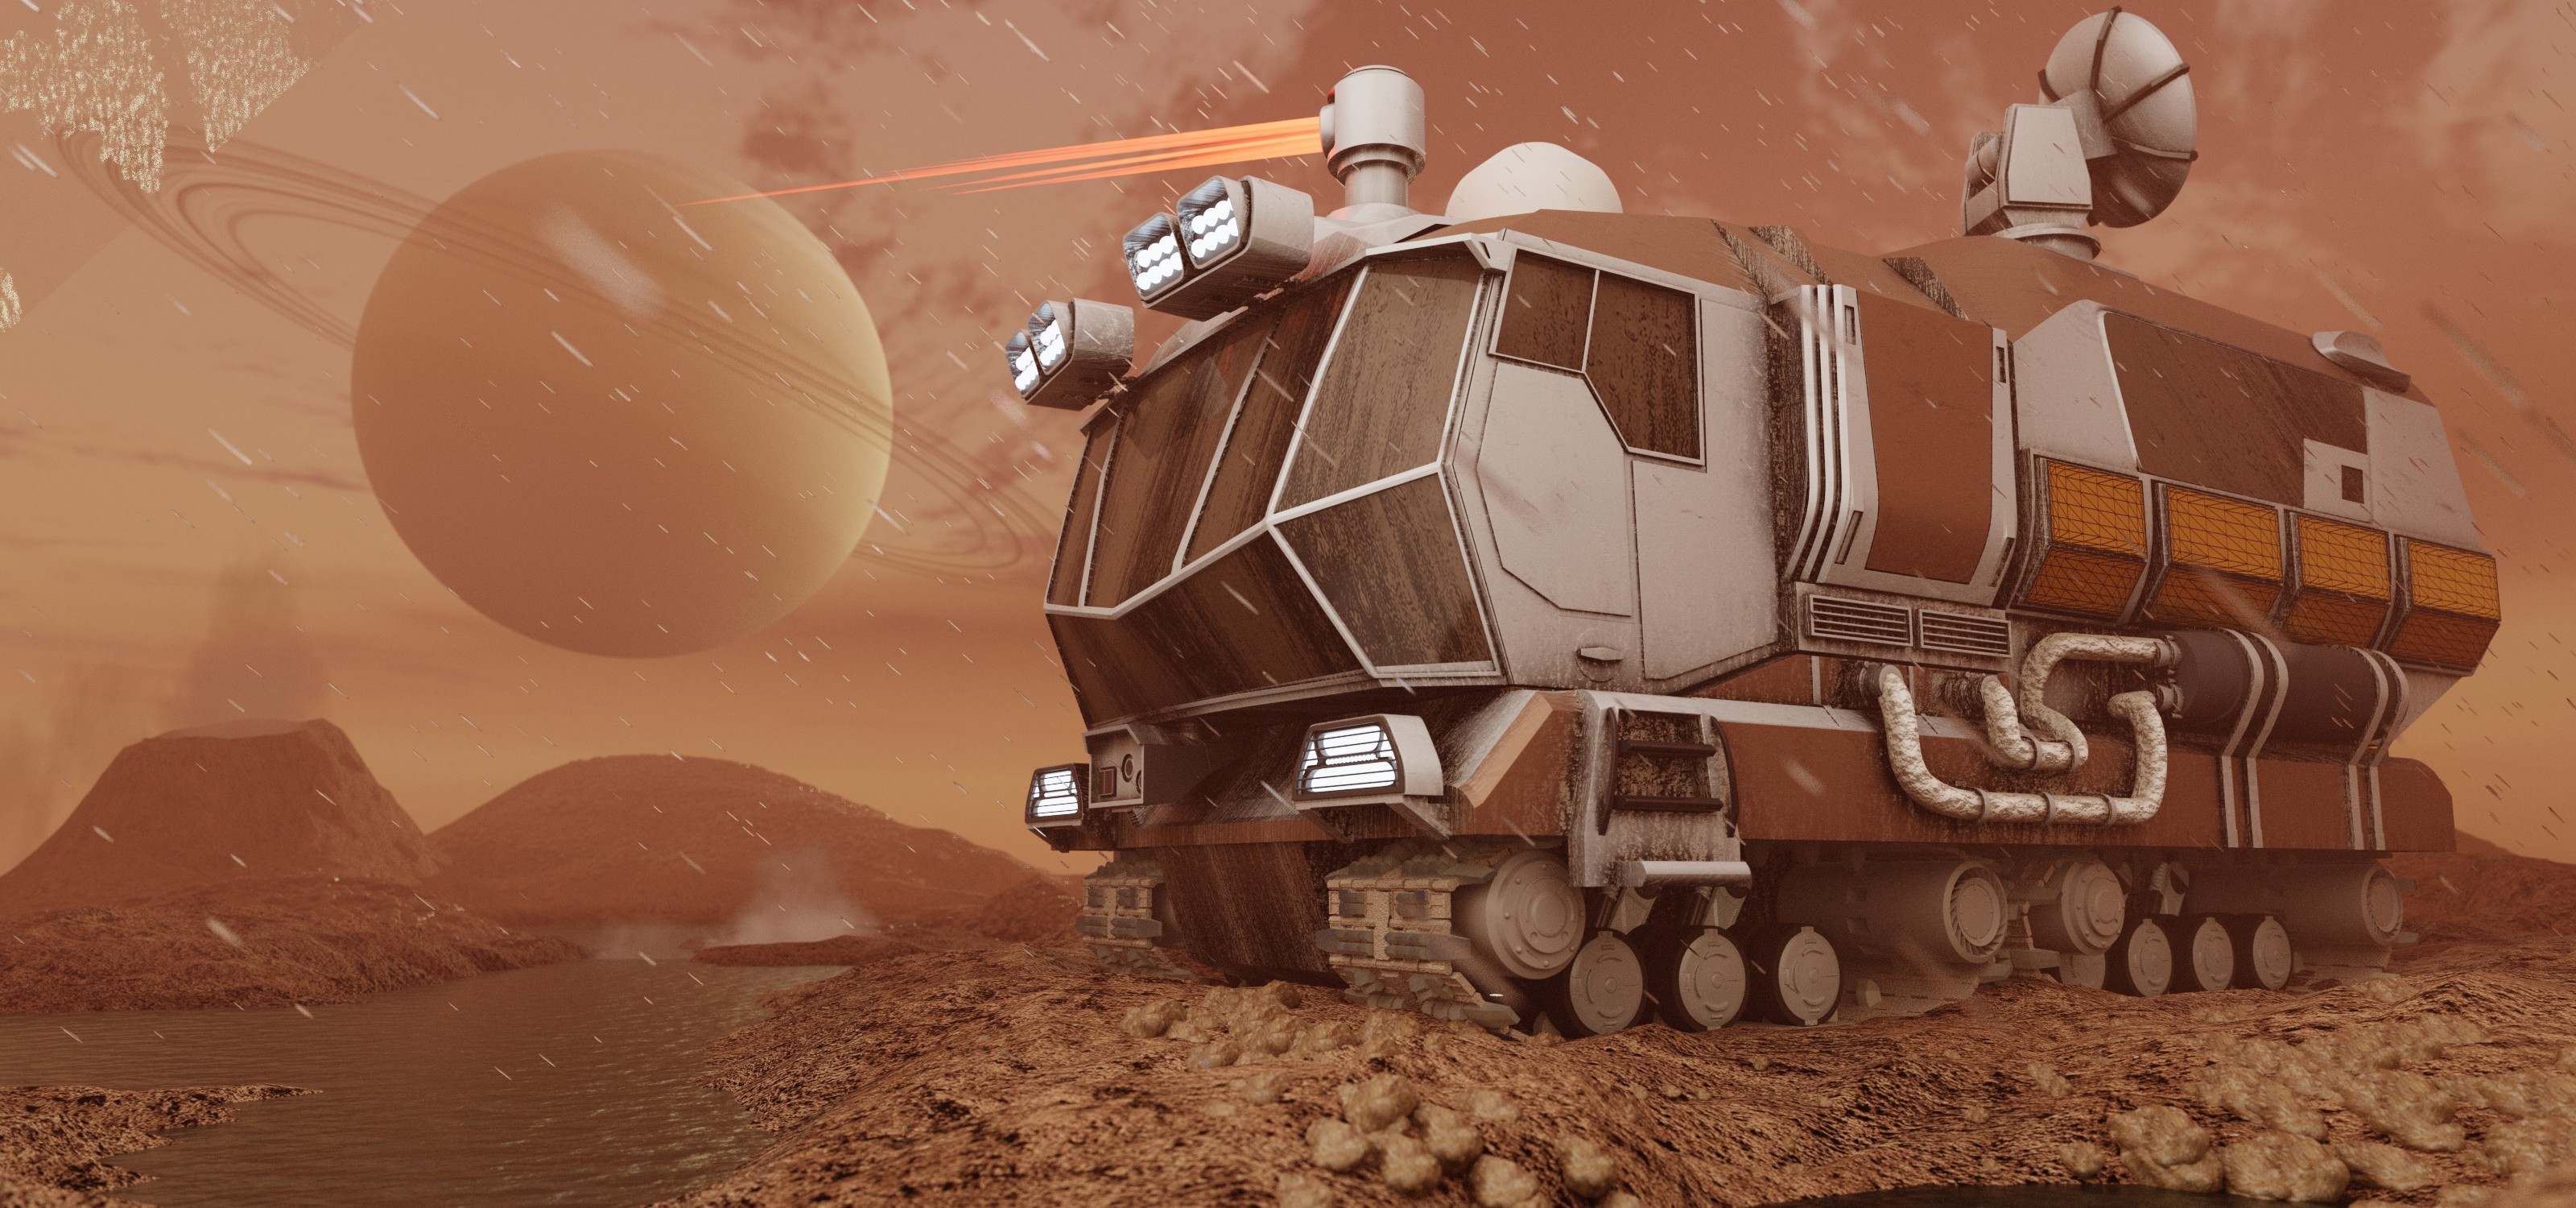 Titan Rover